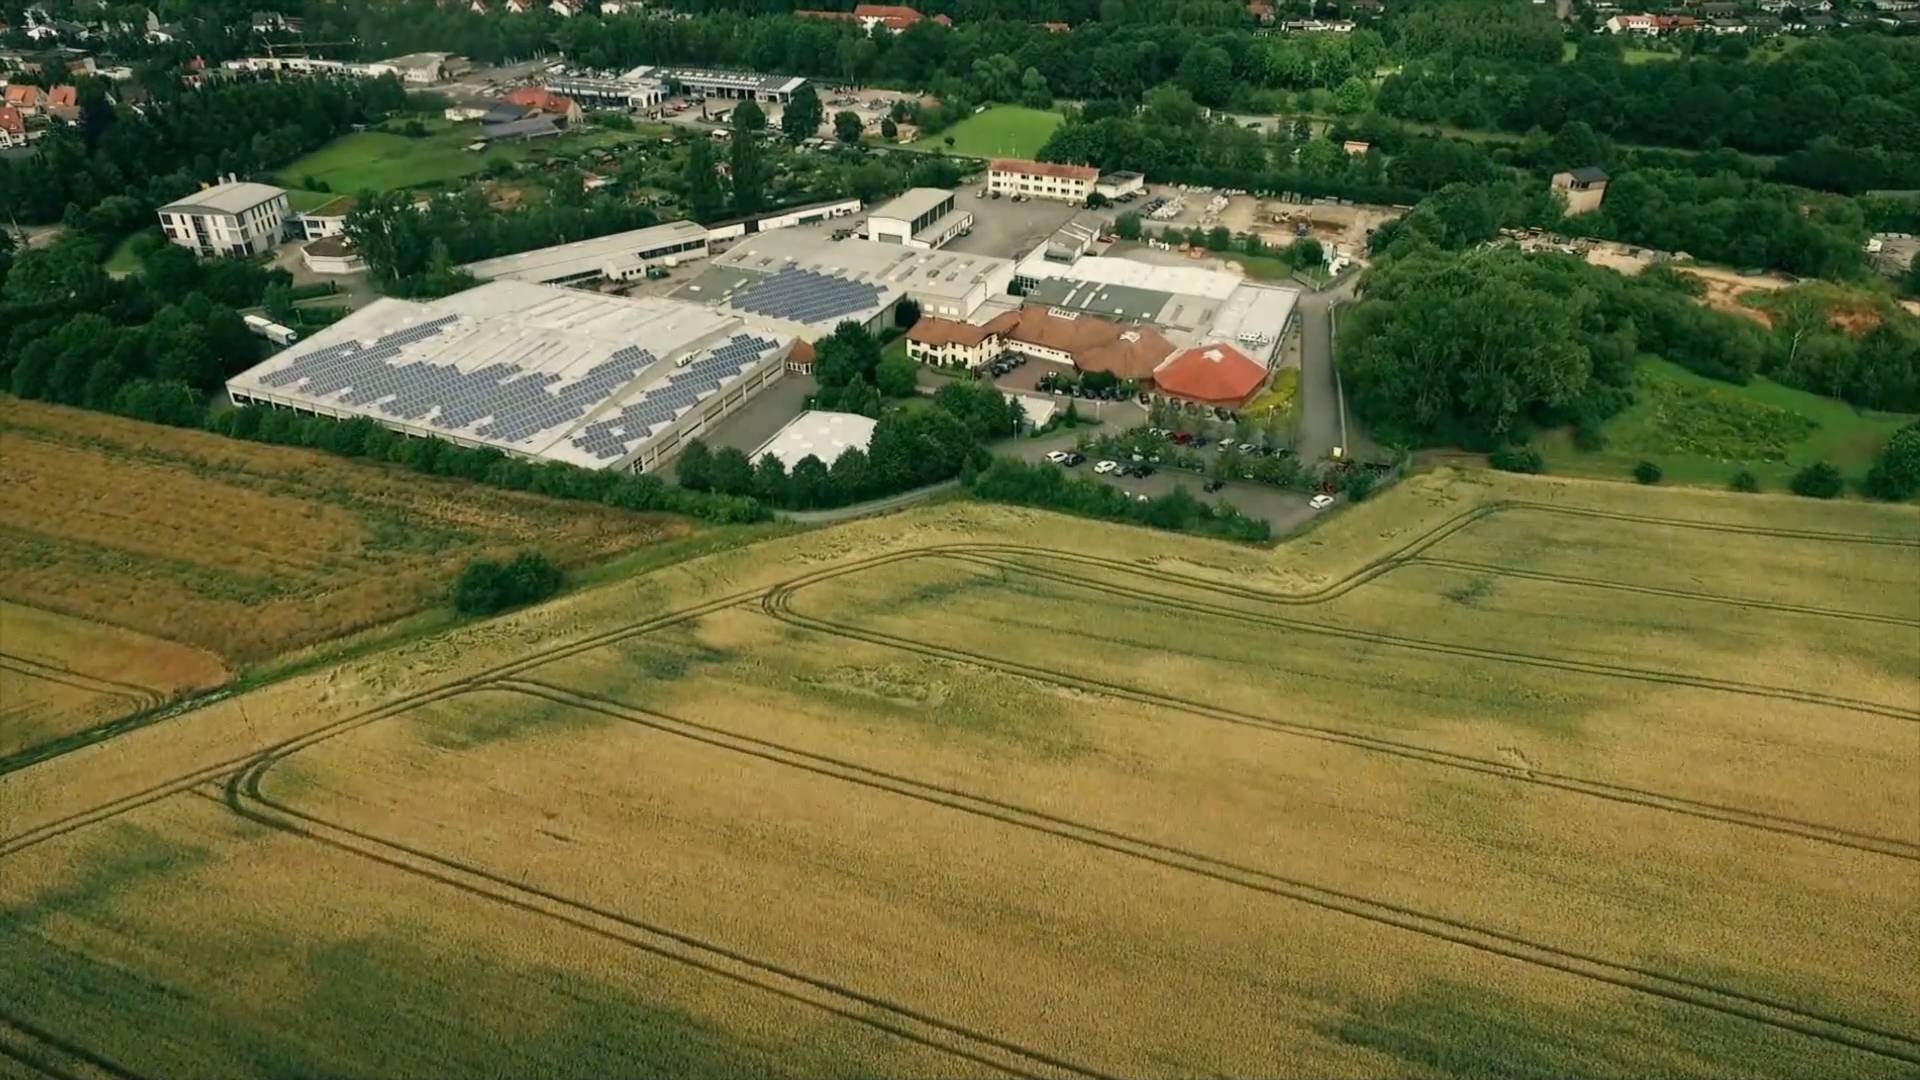 Schwalenstöcker & Gantz GmbH